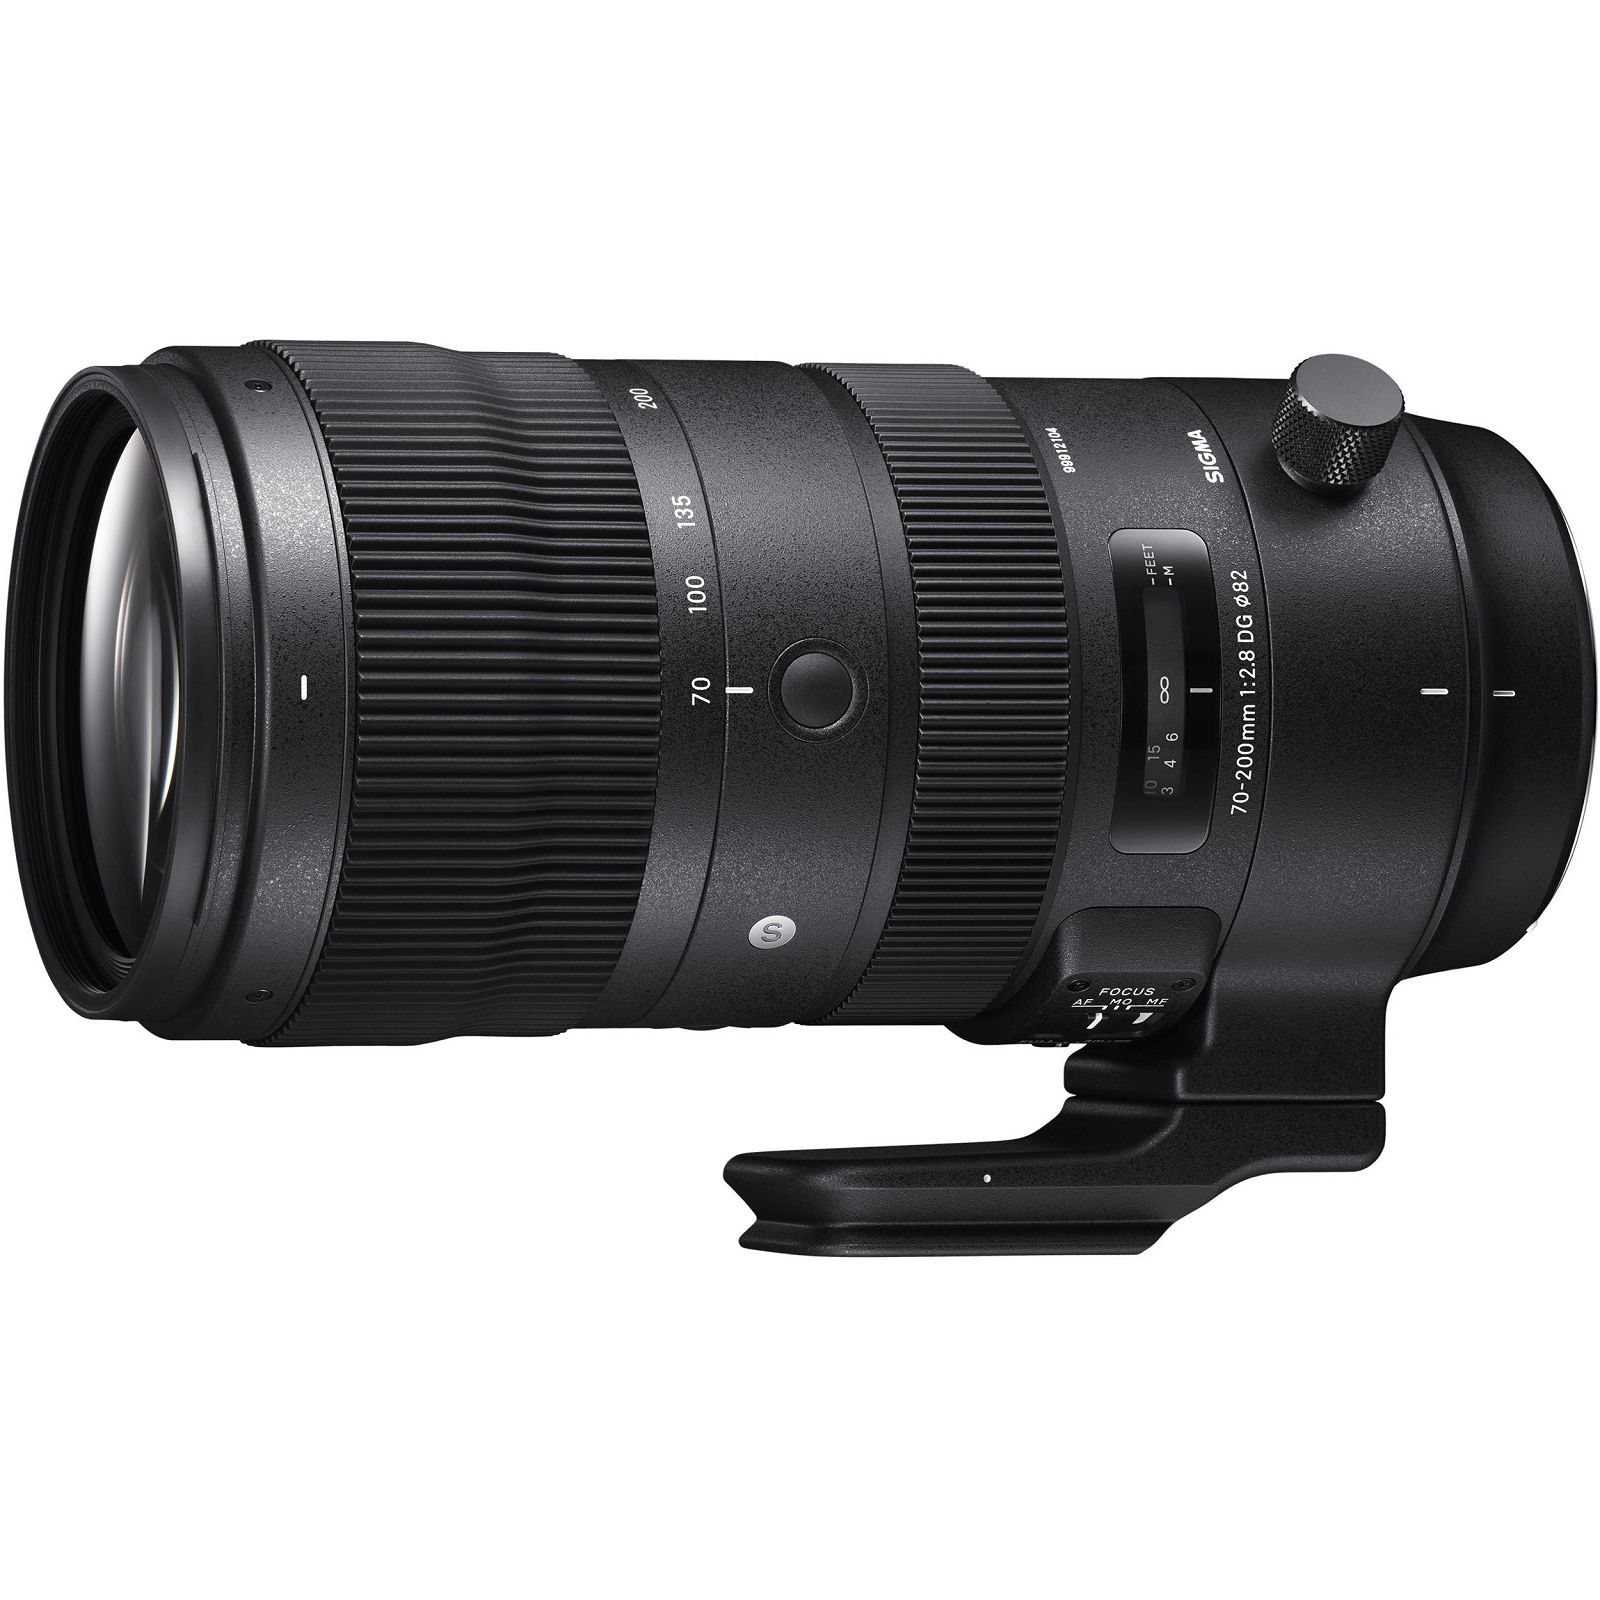 Sigma 70-200mm f/2.8 DG OS HSM Sport telefoto objektiv za Nikon FX (590955)